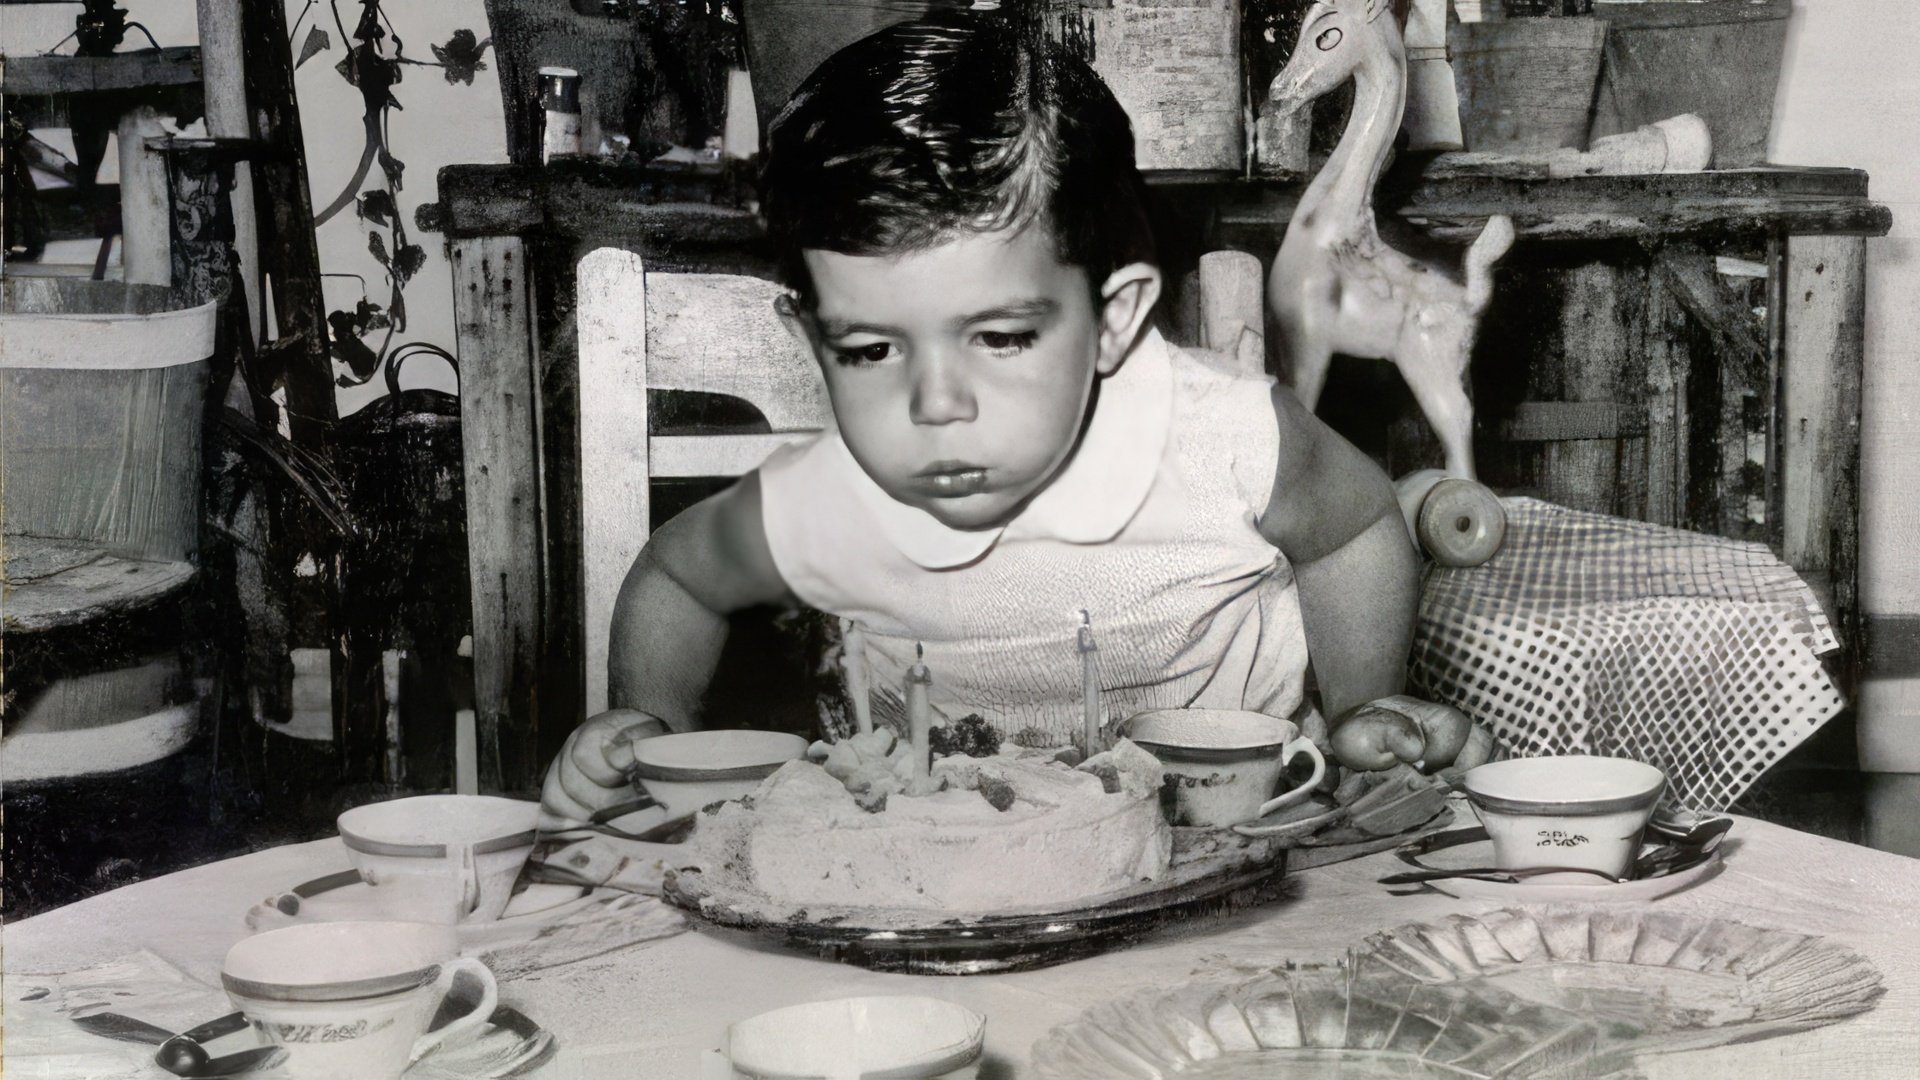 Antonio Banderas in childhood